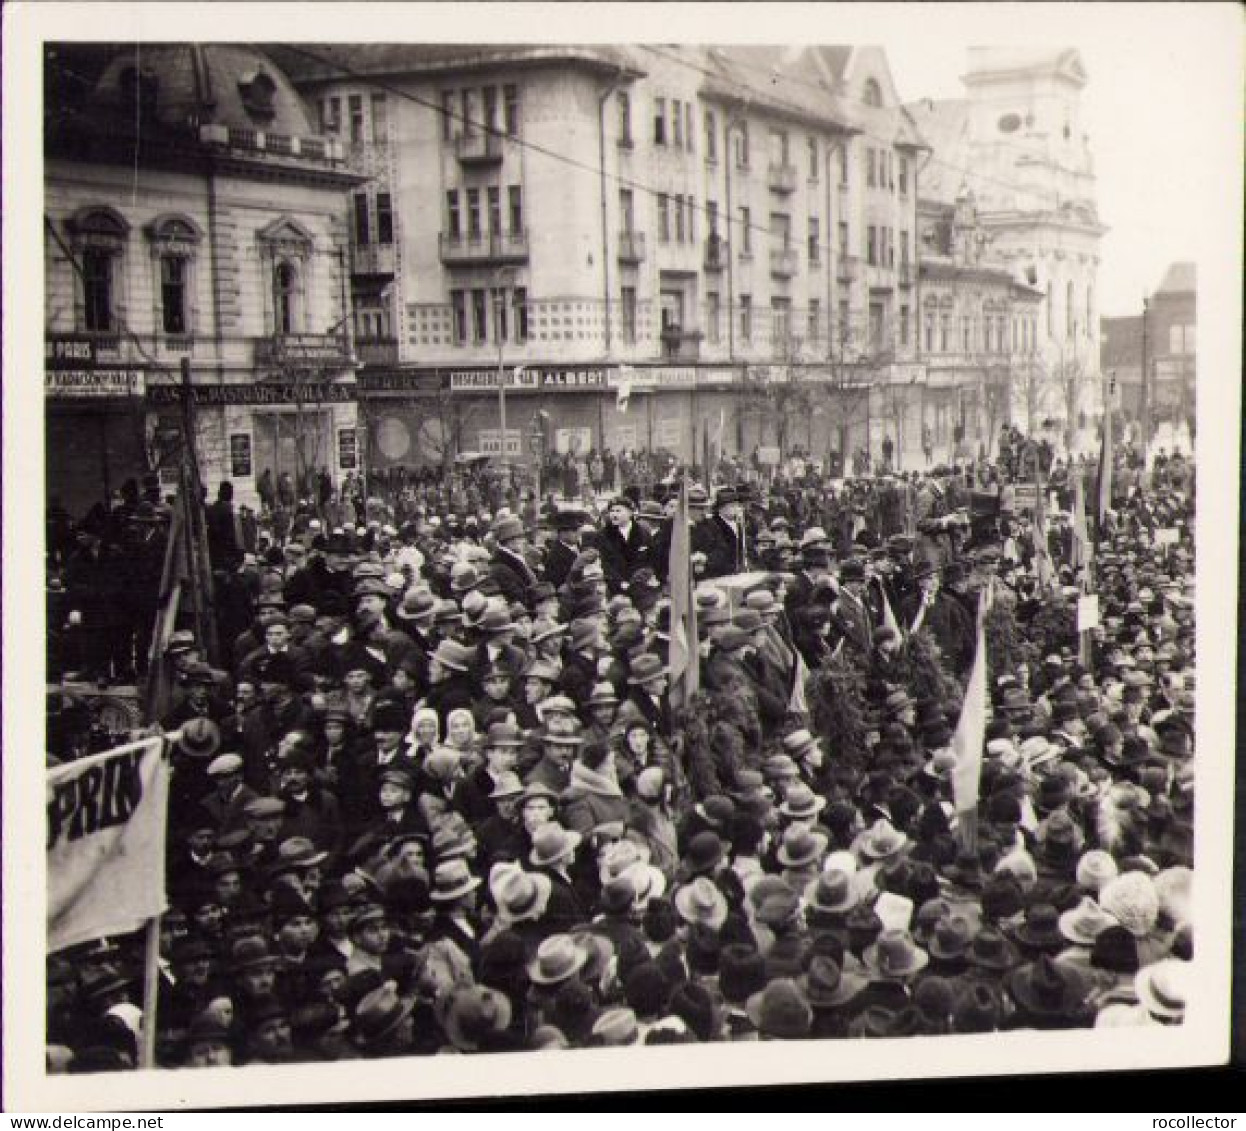 Mare Manifestație Antirevizionistă La Oradea și Teodor Neș, Anii 1930 P1540 - Places